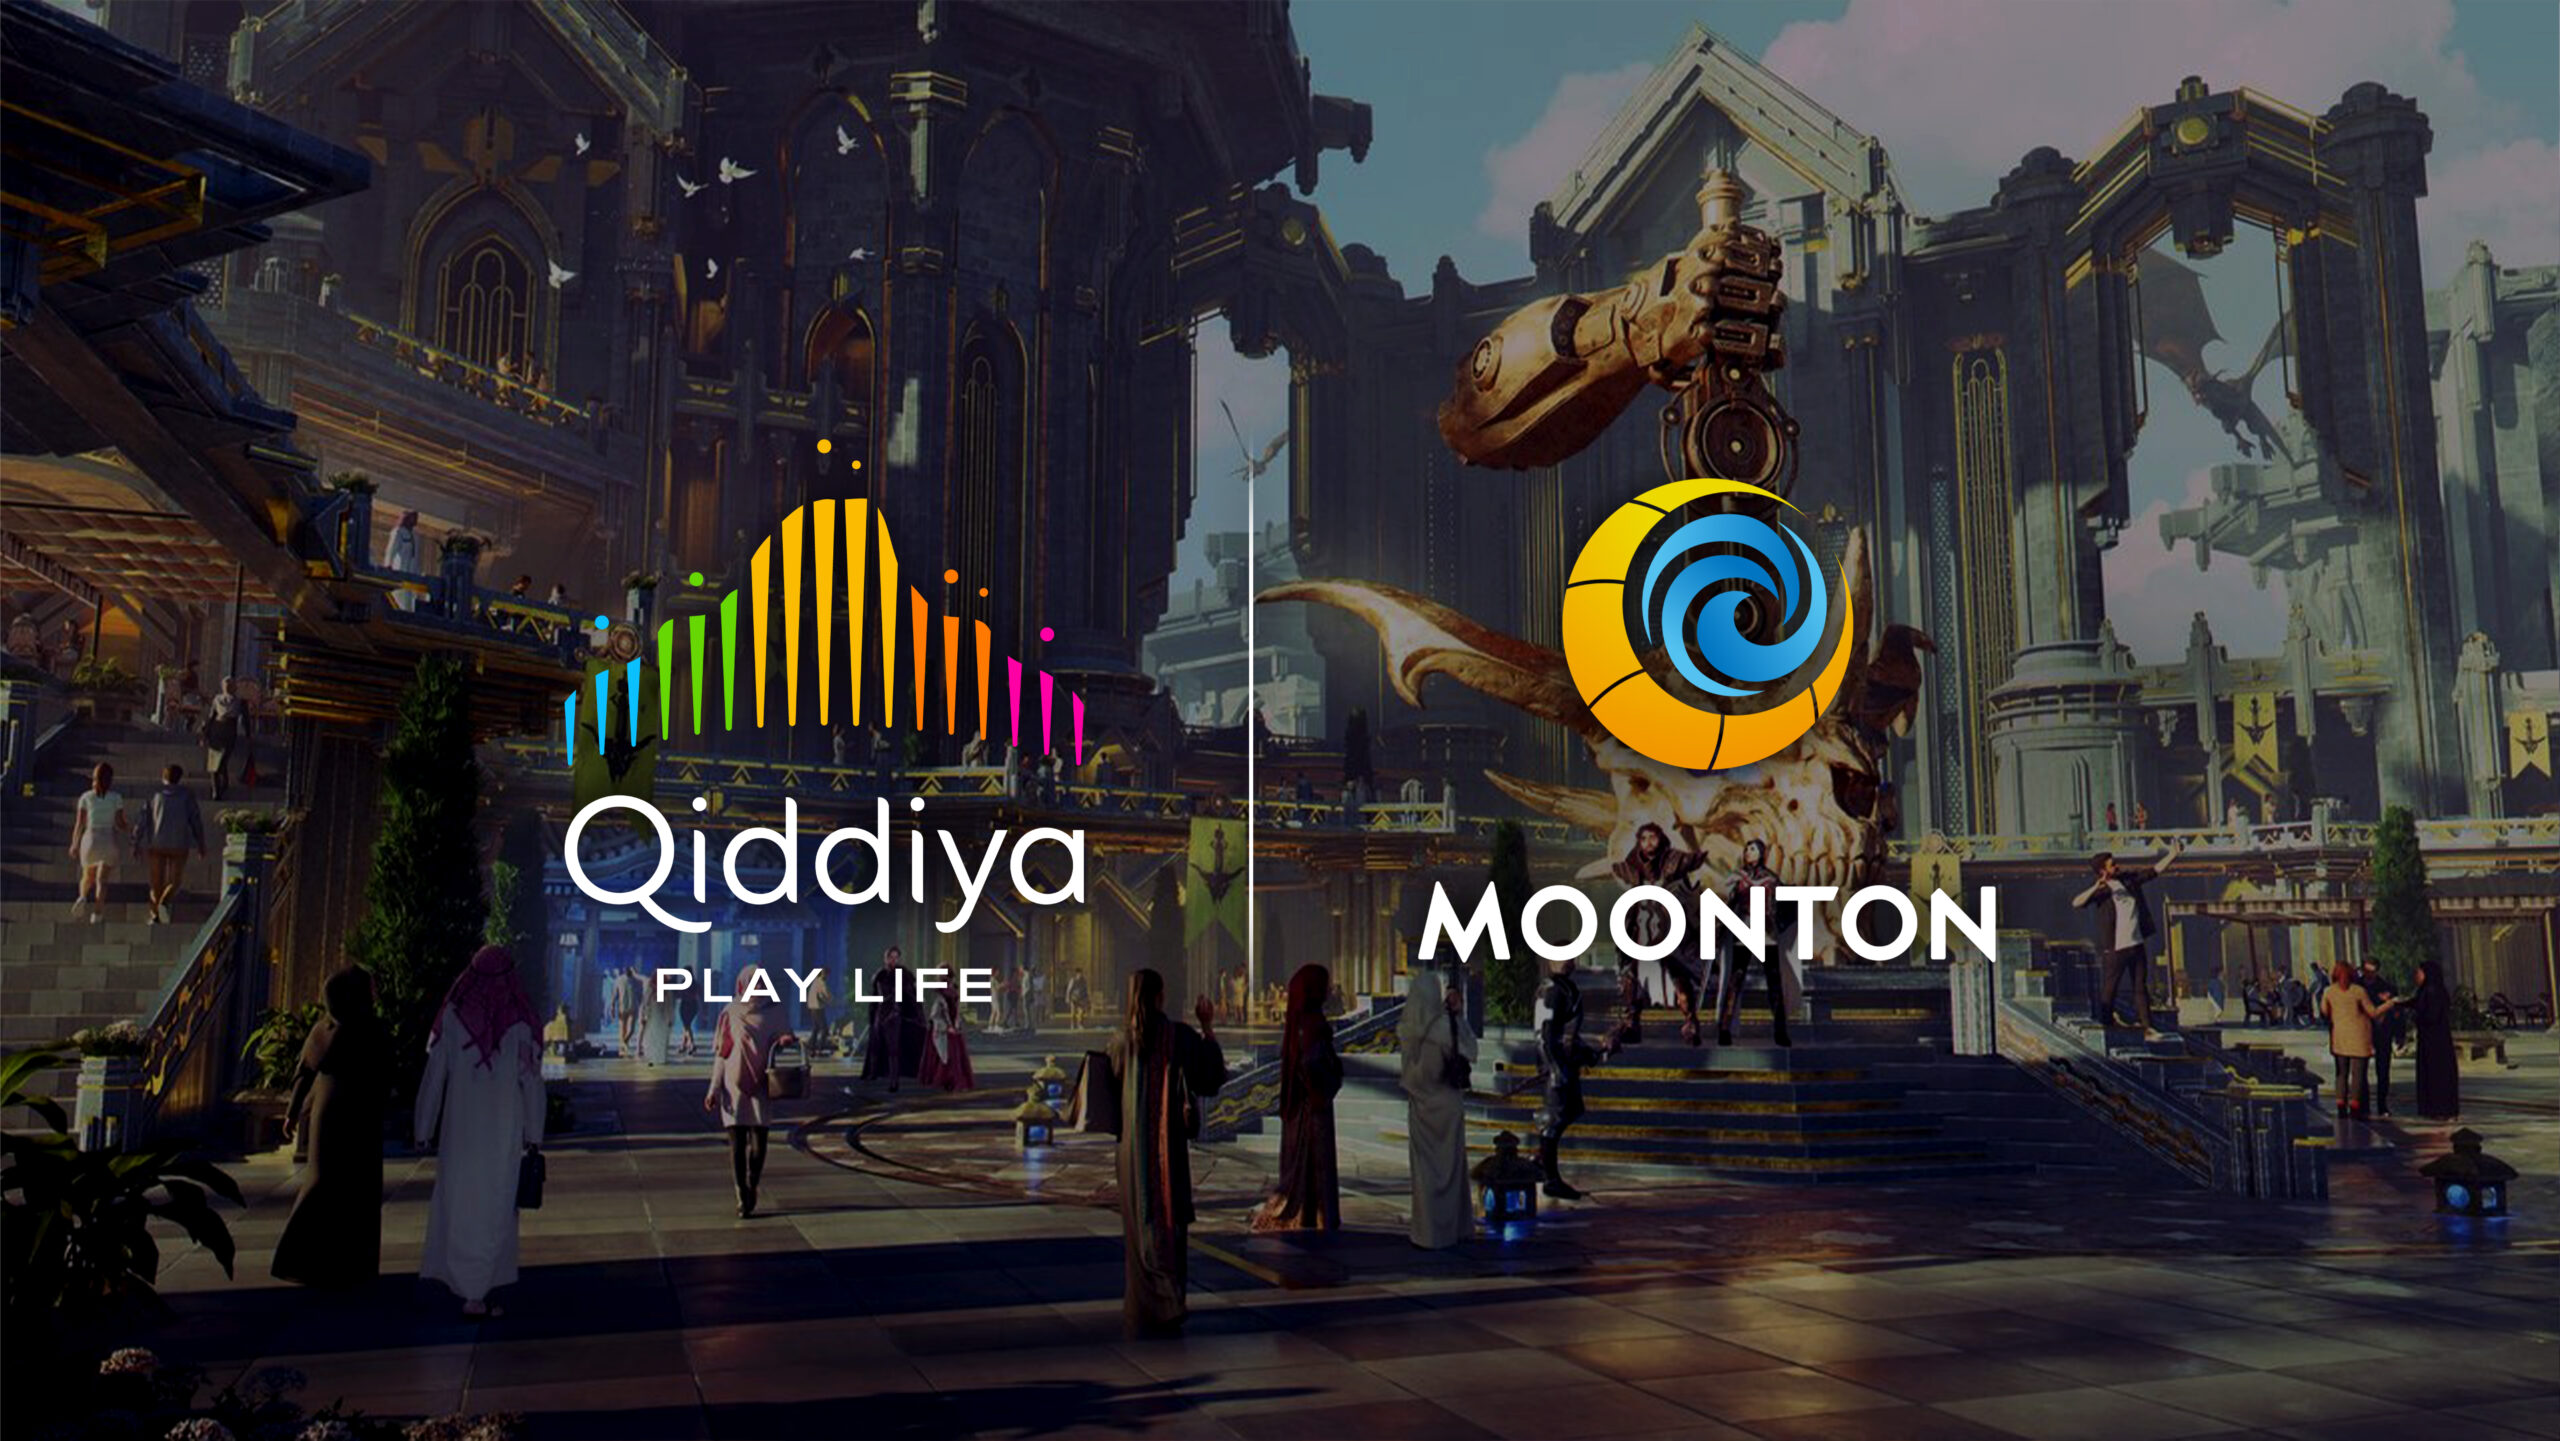 Qiddiya and MOONTON Expand Global Partnership to Grow Mobile Legends: Bang Bang Esports Worldwide